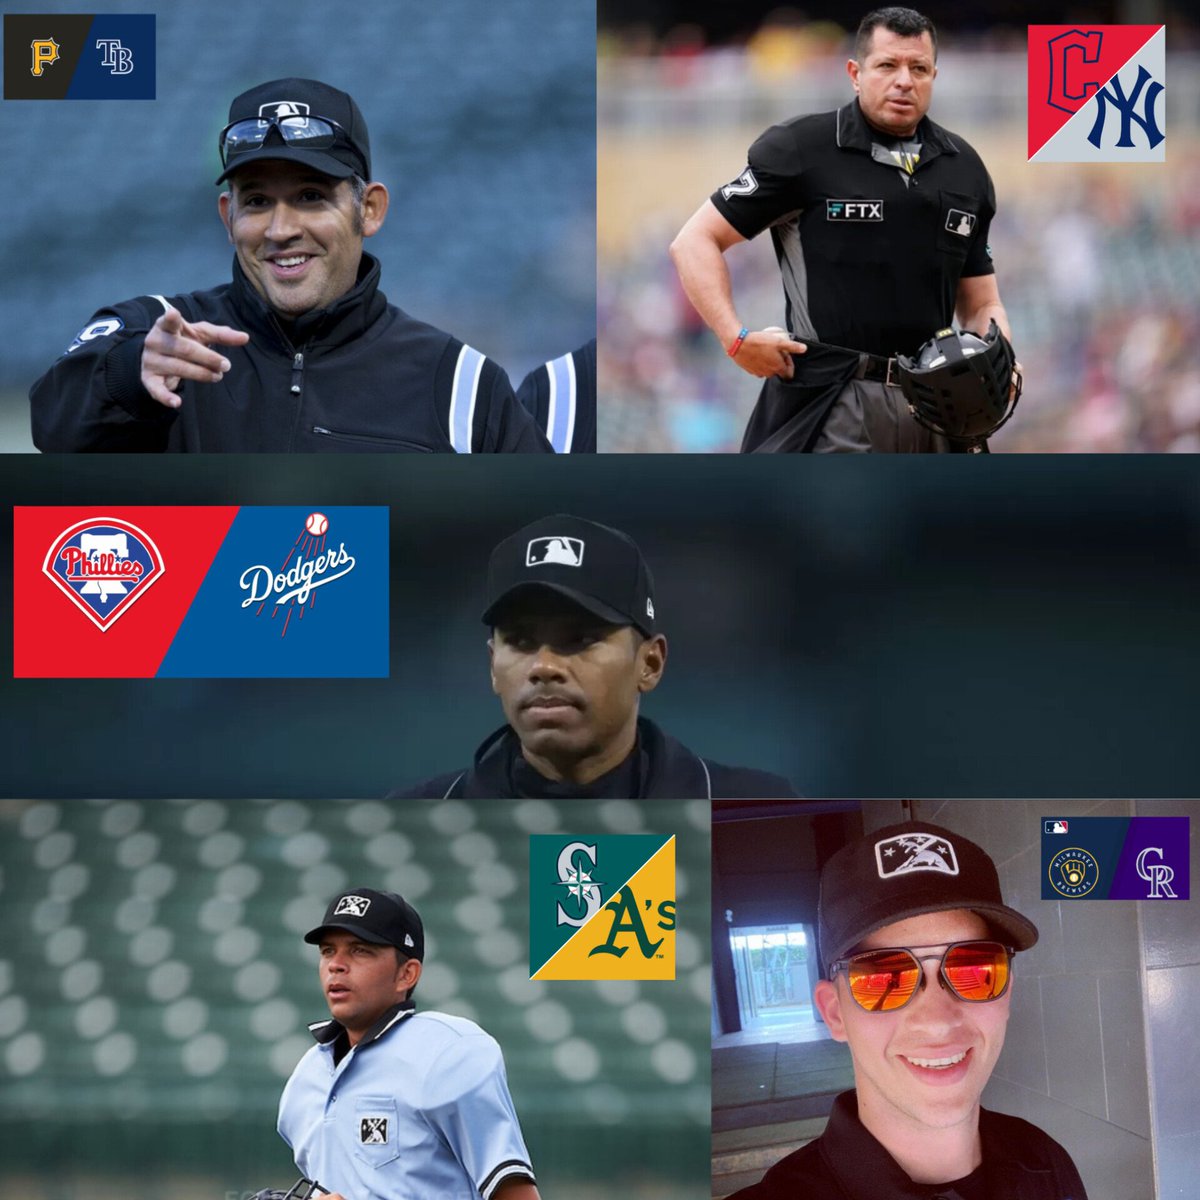 Por segundo día consecutivo 5 umpires venezolanos se encuentran trabajando en la MLB, #MannyGonzález79, #CarlosTorres37, #EdwinMoscoso32, #EmilJiménez82 y #EdwinJiménez75 

¡ORGULLO VENEZOLANO! 🇻🇪⚾👍🏻
#MLB #VUC #FVB #Venezuela #arbitraje #umpires #constancia #disciplina